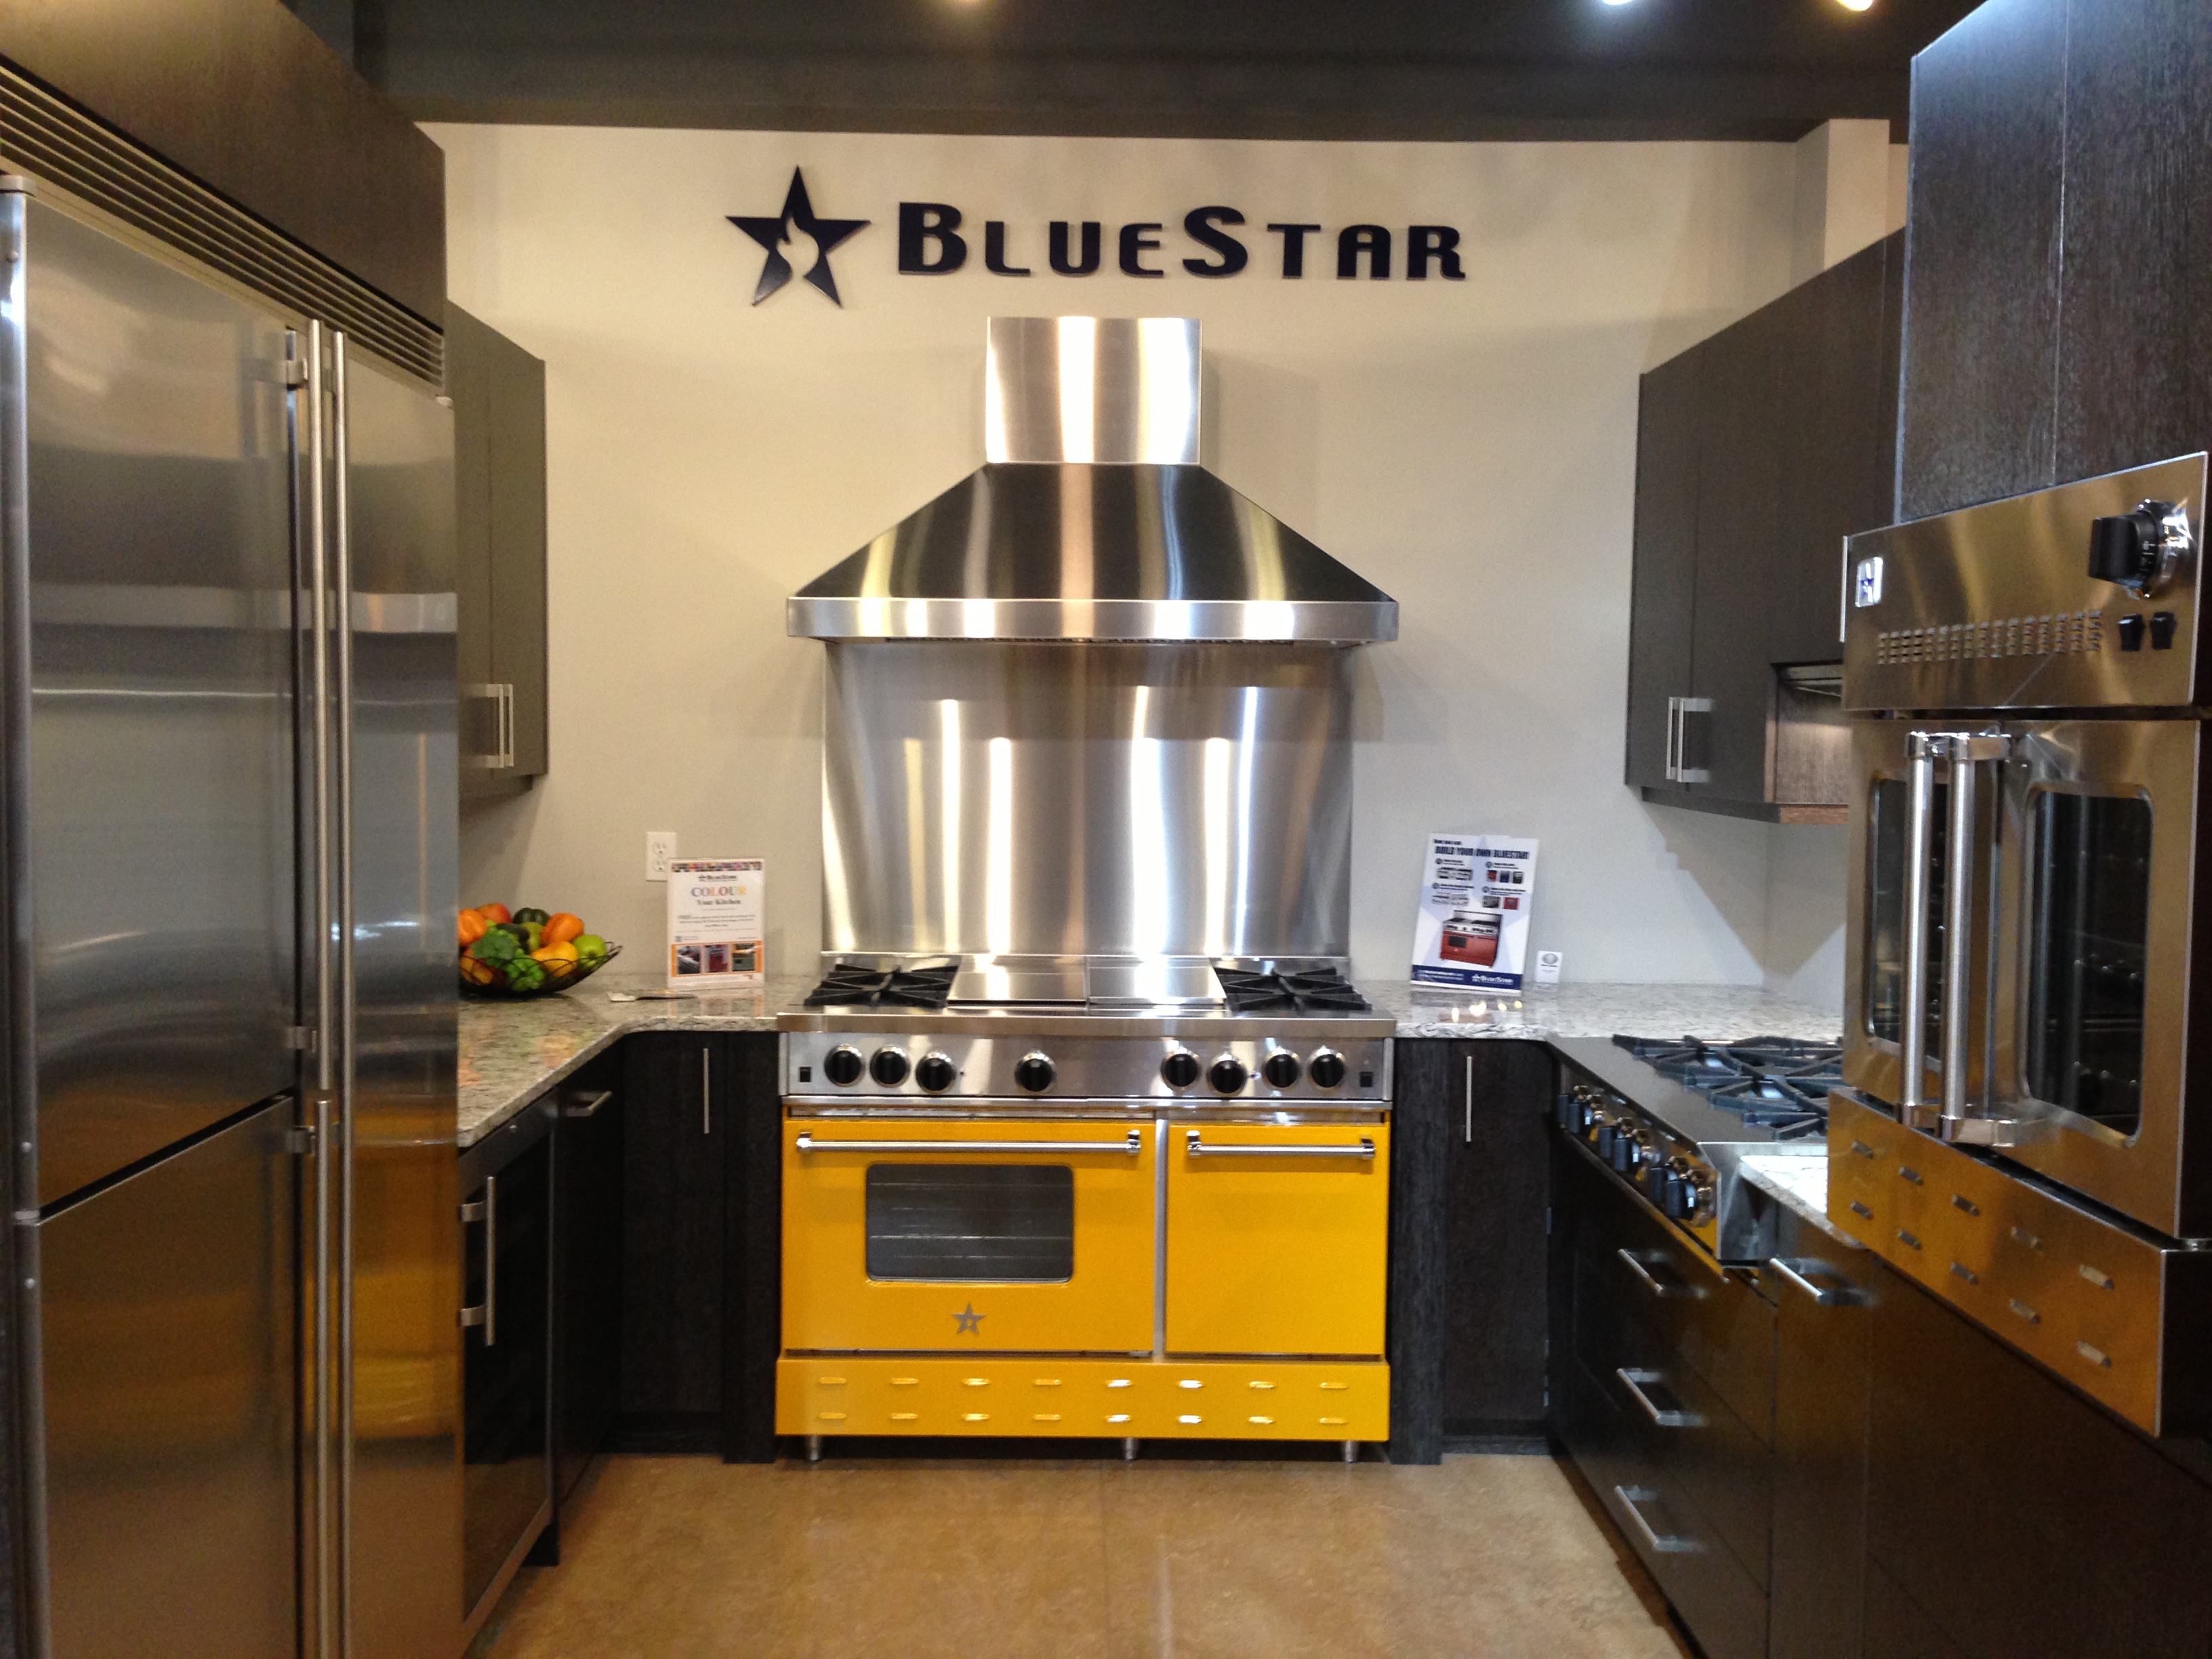 Blue Star - Home & Kitchen Appliance Store Edmonton